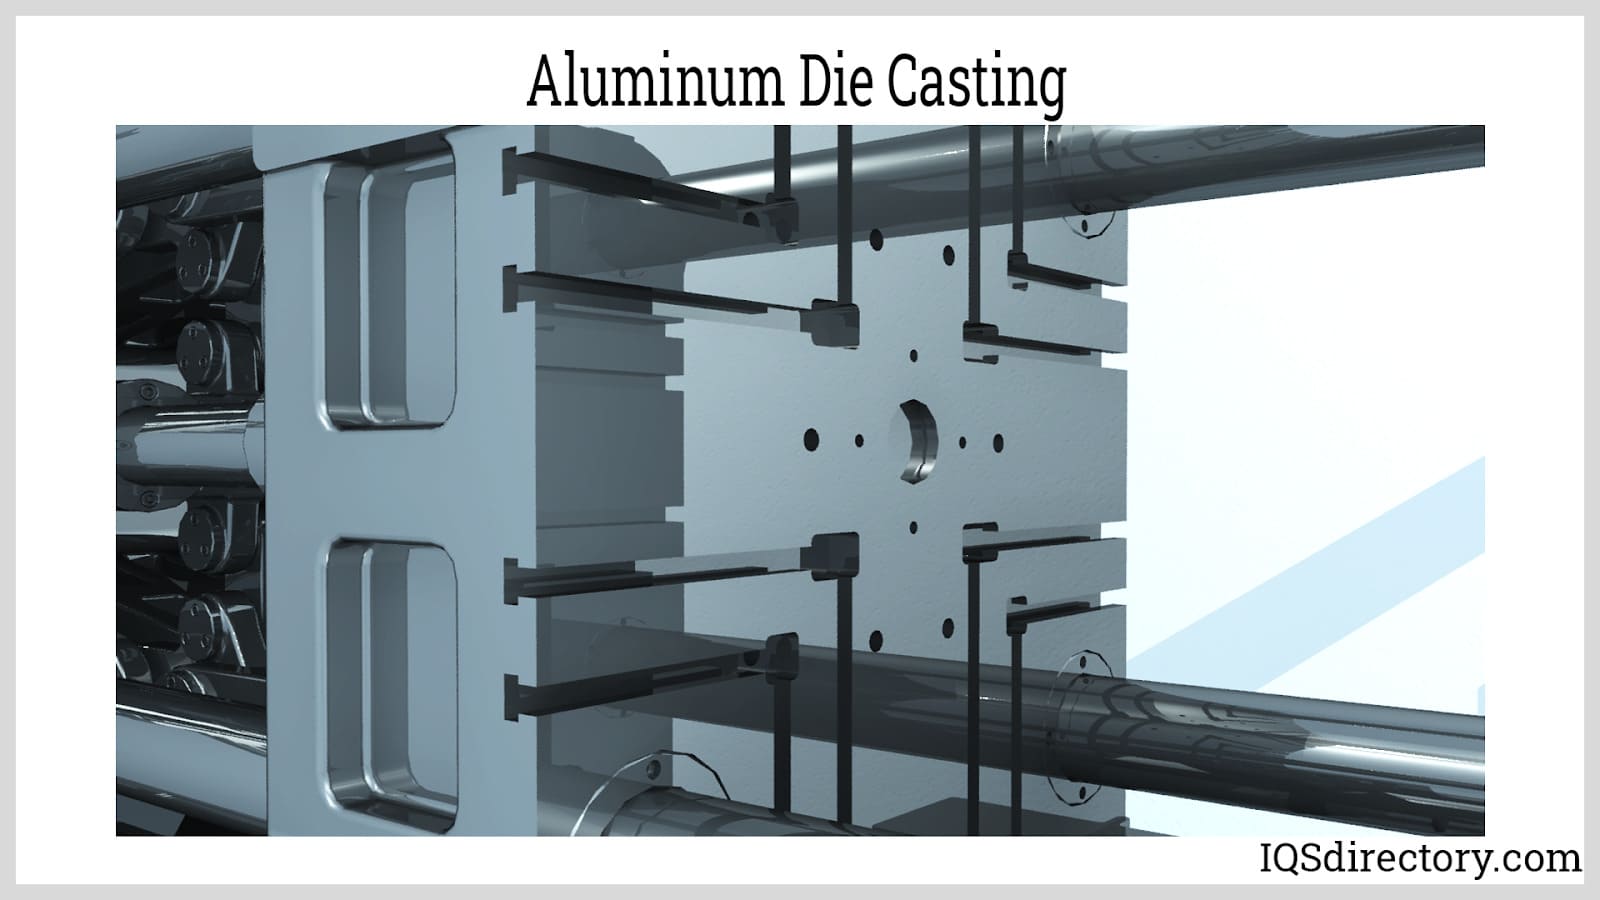 Aluminum Die Casting